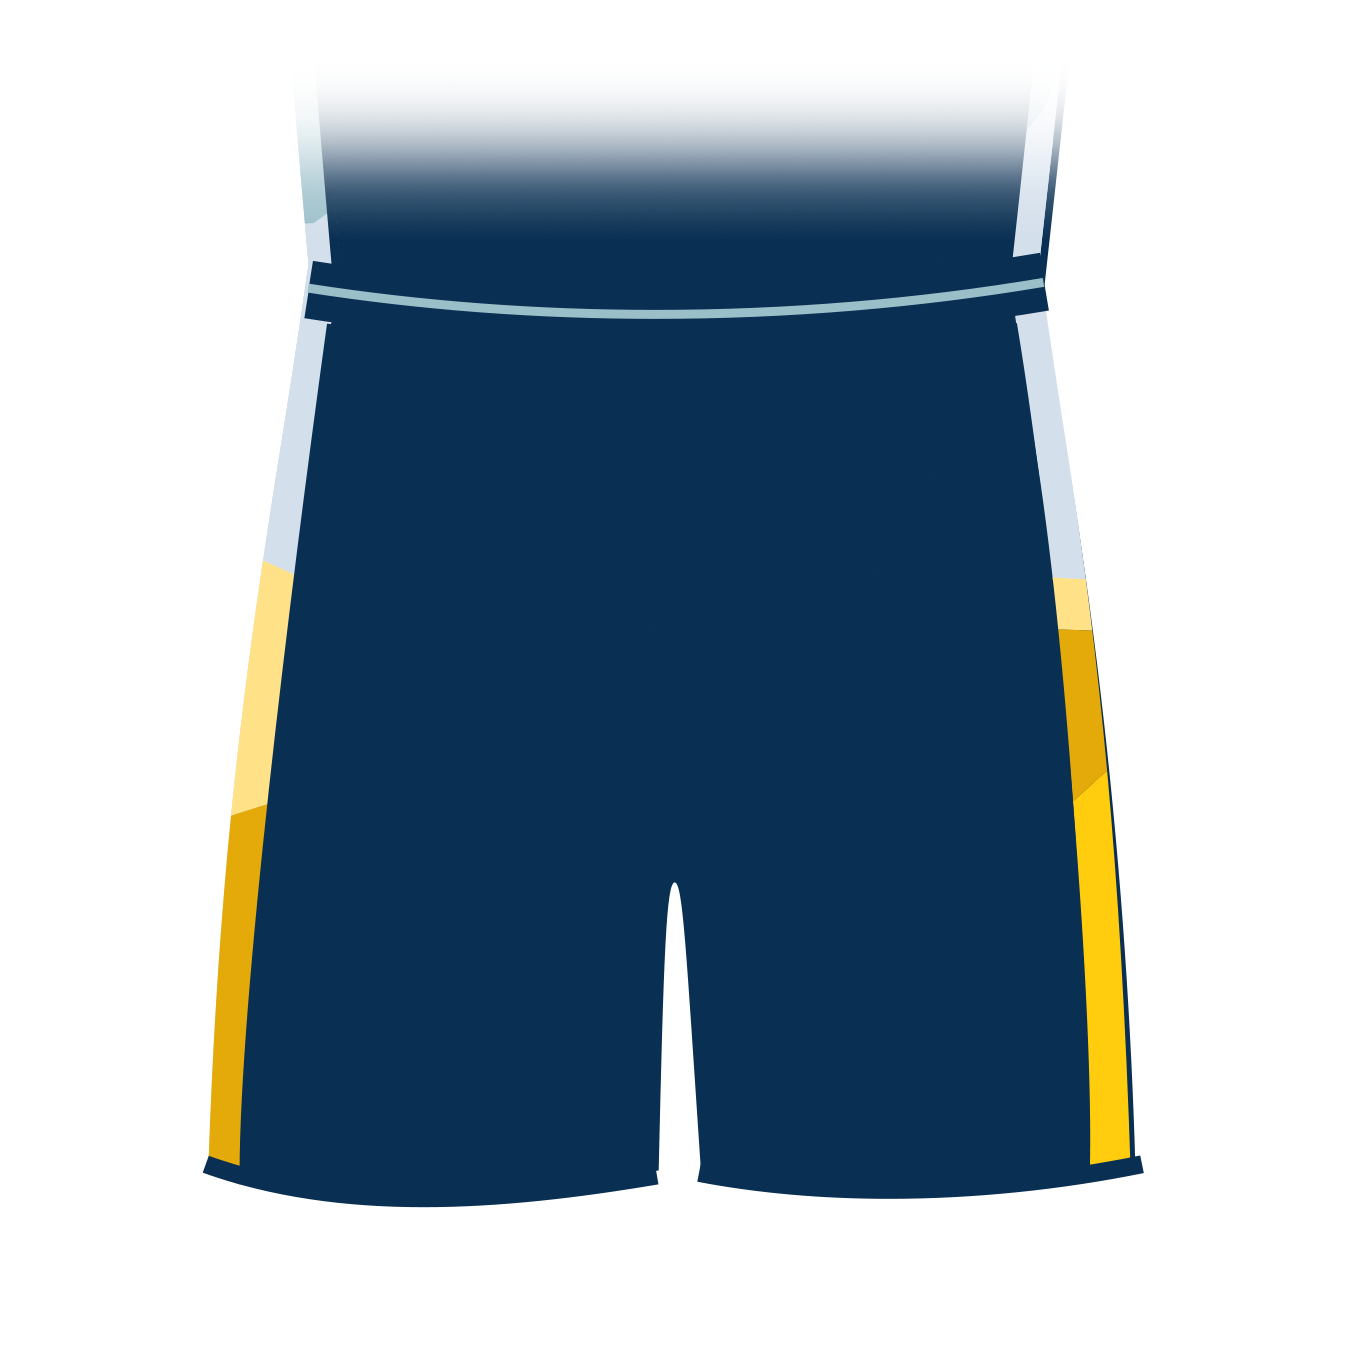 Club Shorts - Senior Unisex Sizes (Blue)